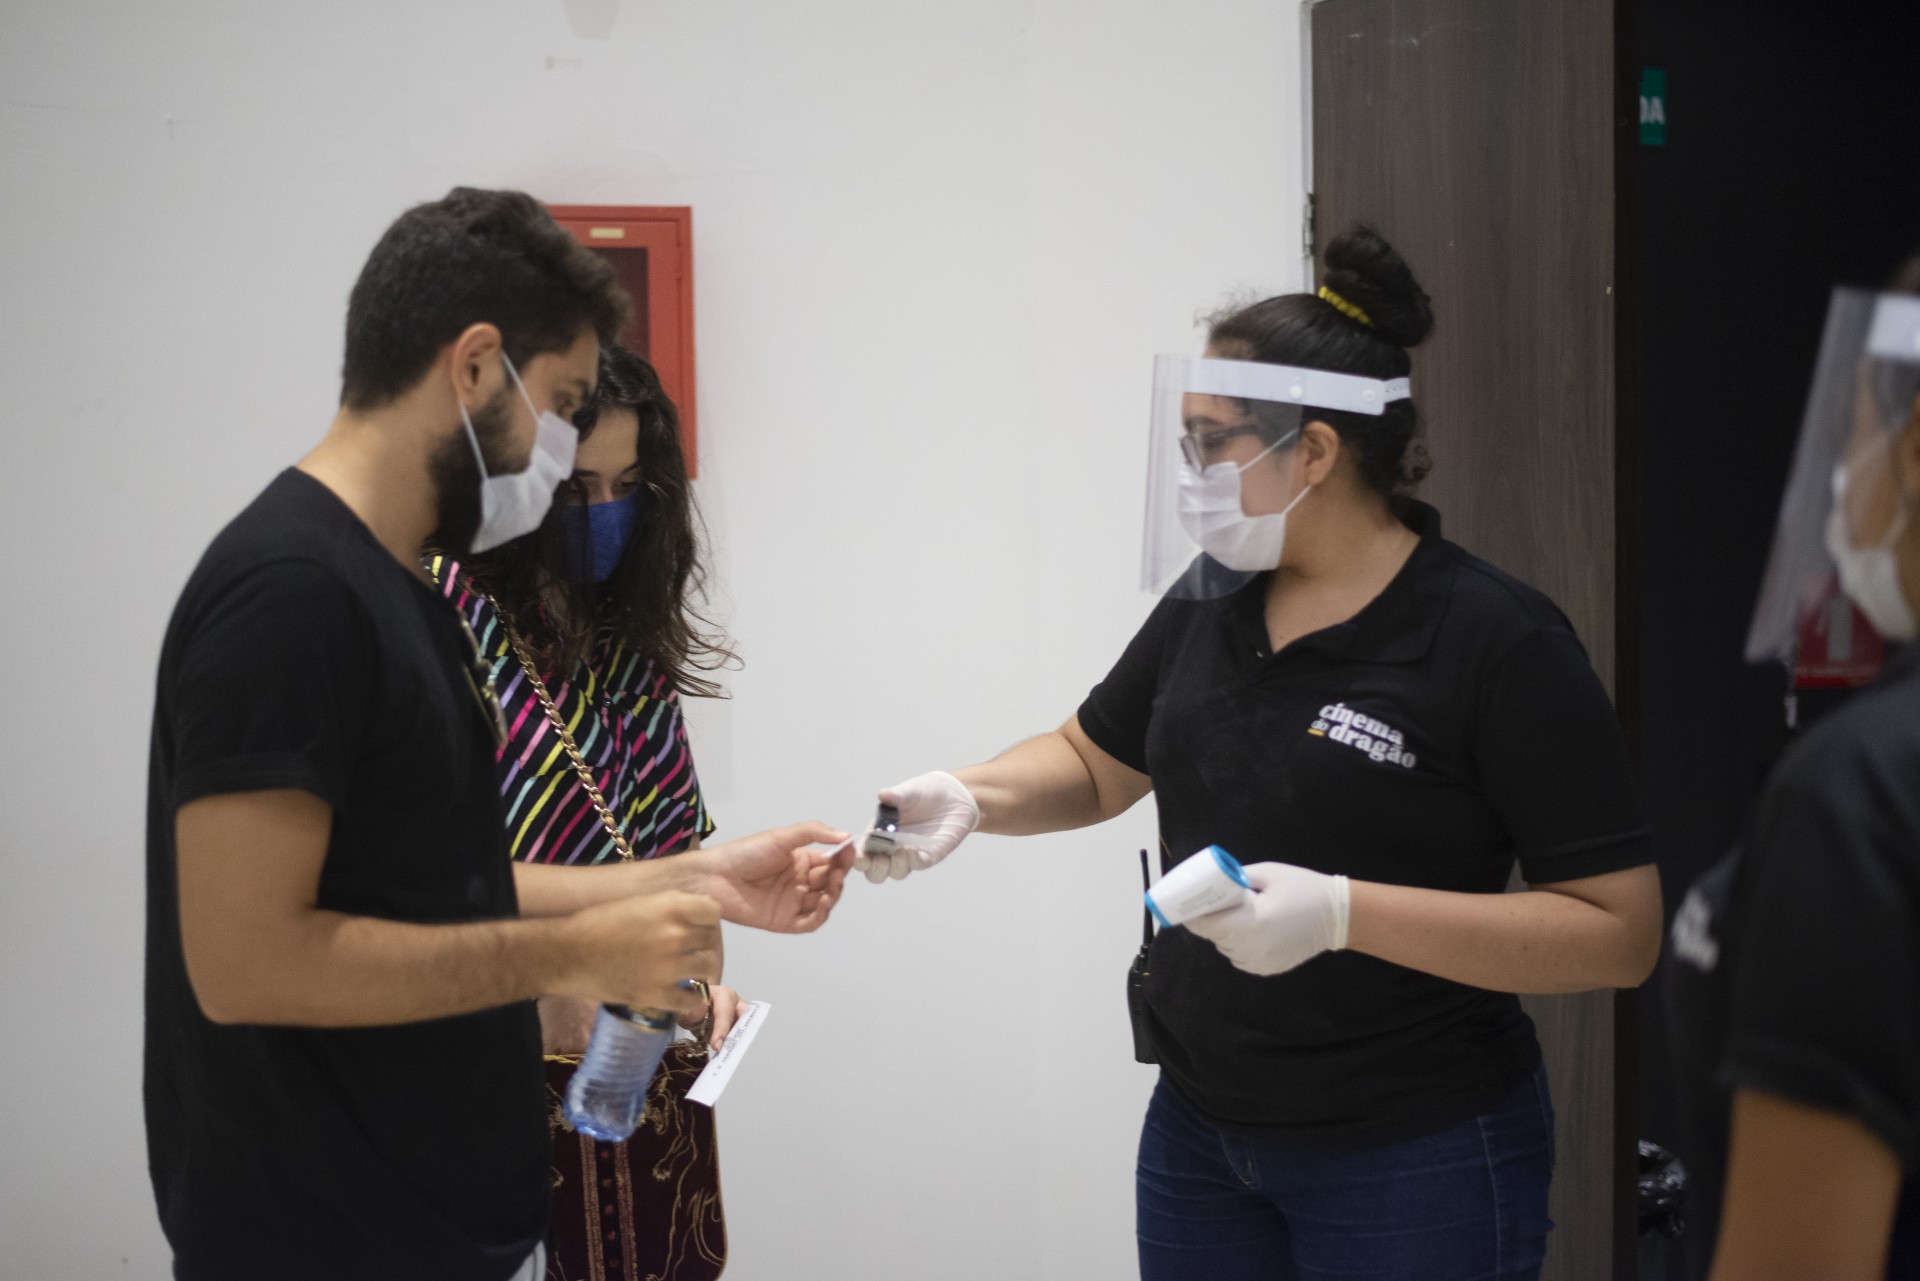 Reabertura segue os devidos protocolos, como uso obrigatório de máscaras (Foto: Luiz Alves / divulgação)